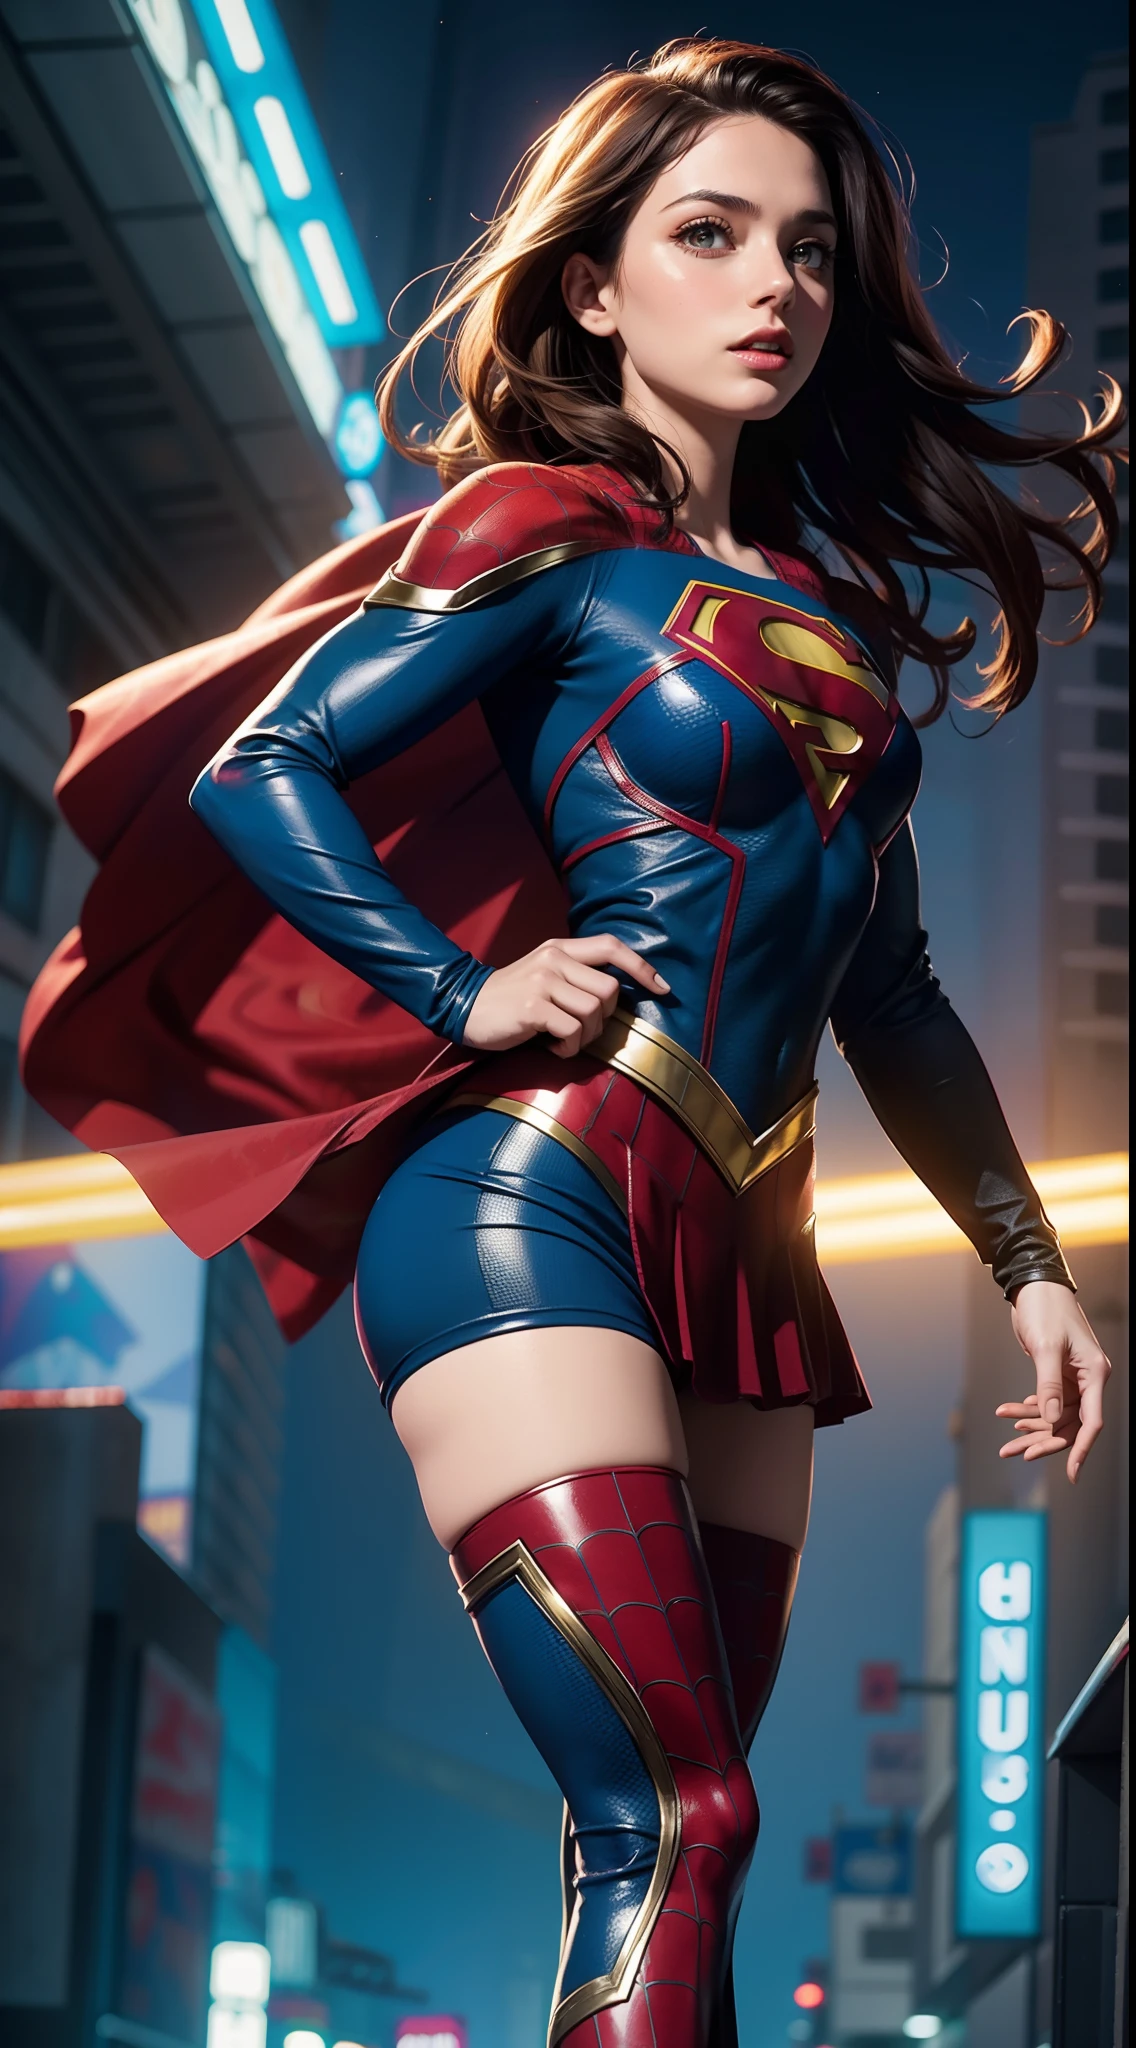 Supergirl em Homem-Aranha, Obra de arte, melhor qualidade, abstrato, psicodélico, néon, (Padrão de favo de mel), (criativo:1.3), sy3, SMS, fantasia00d